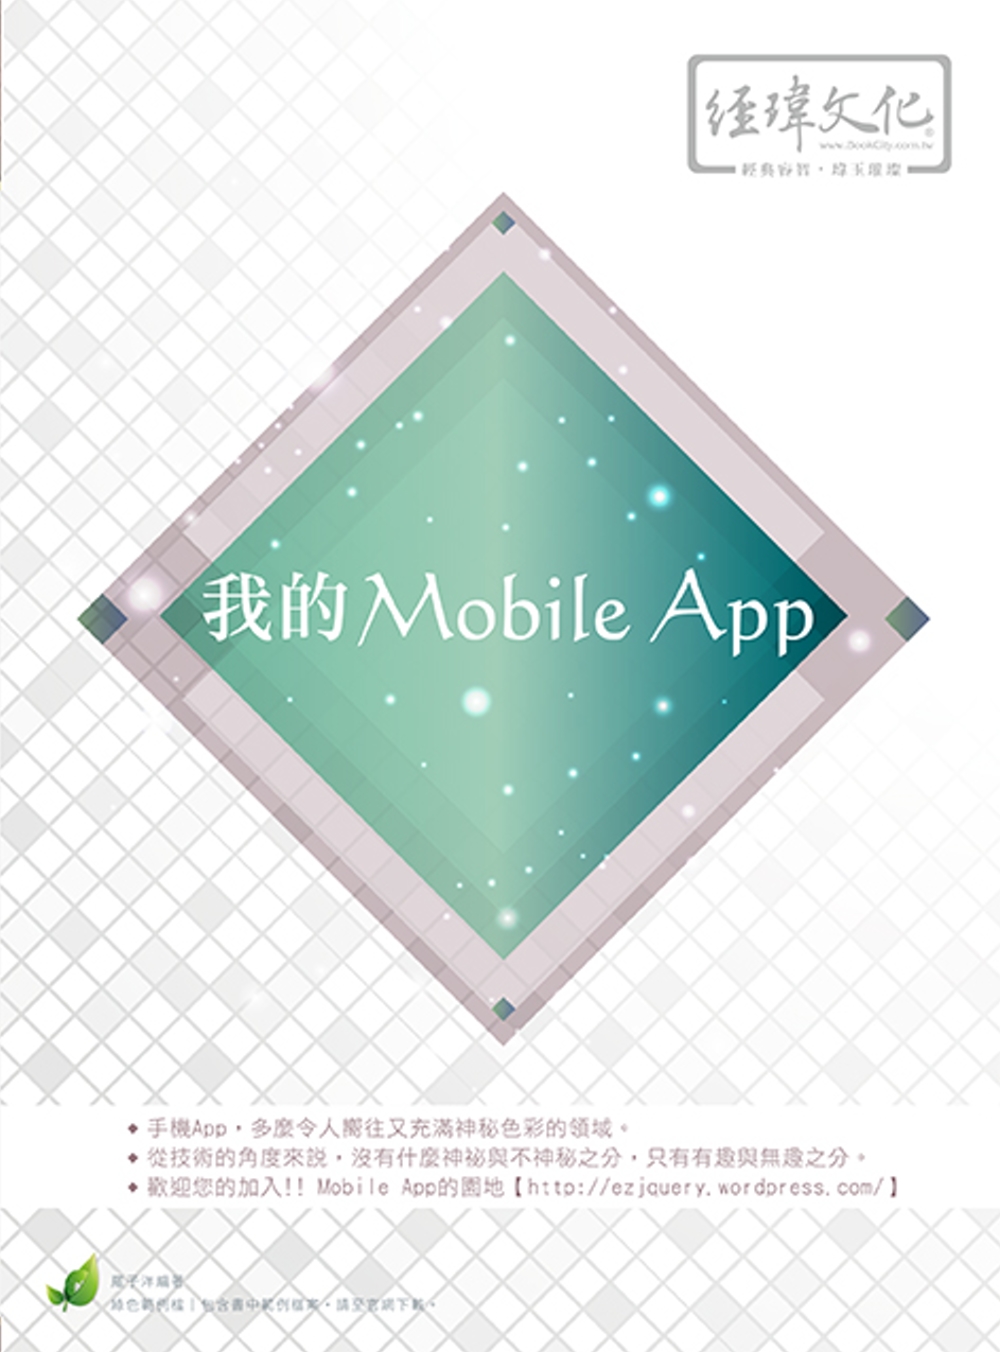 我的Mobile App